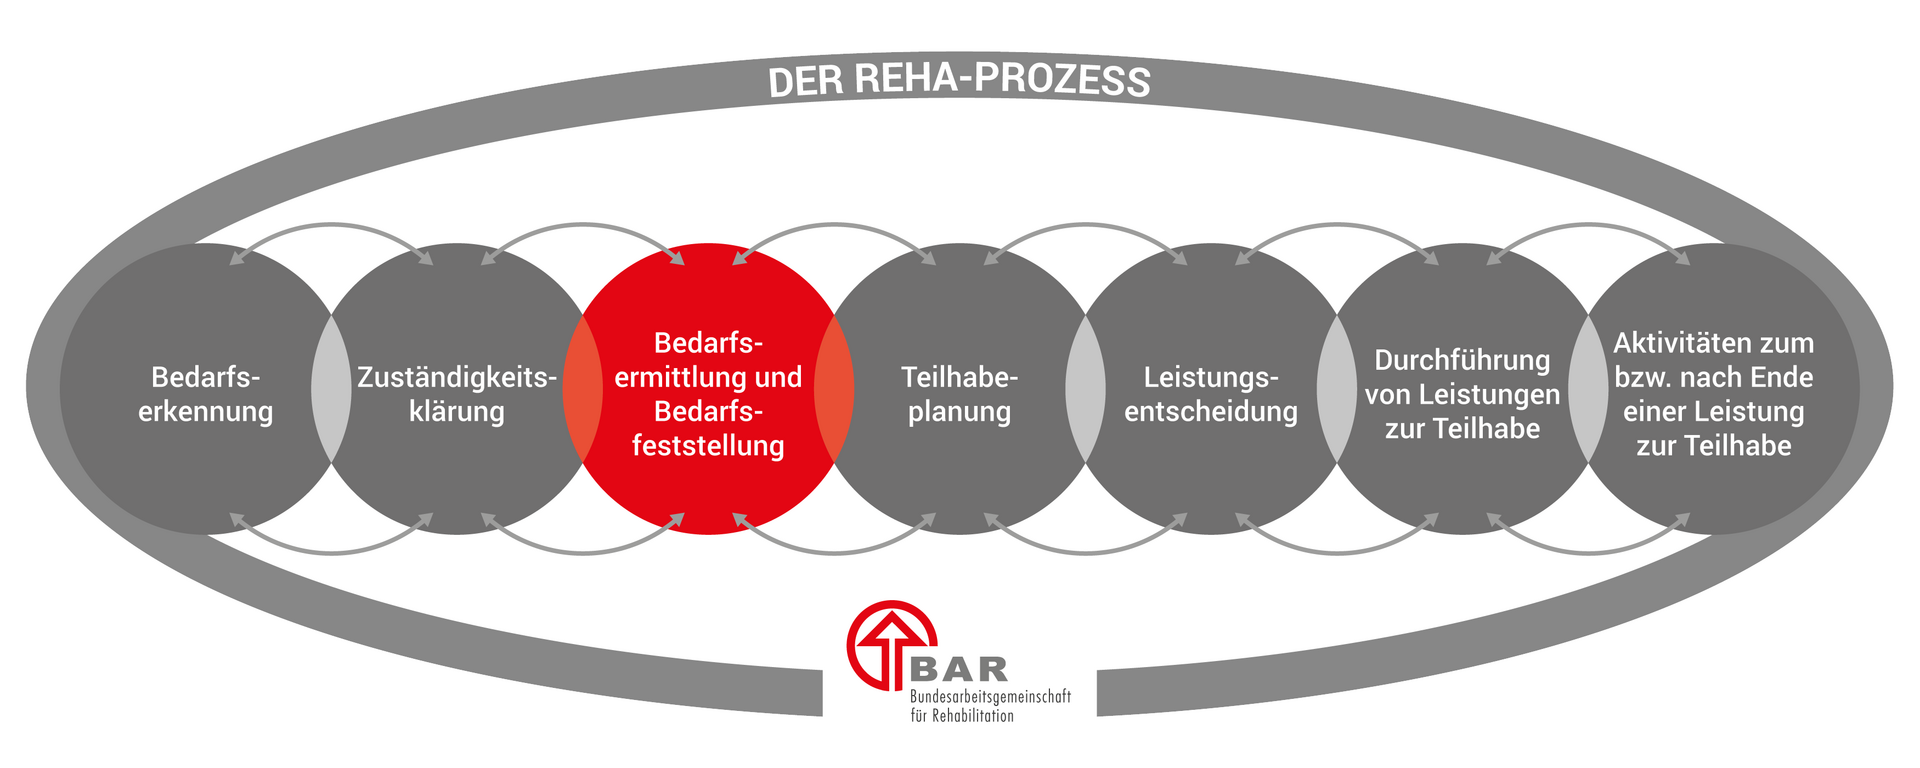 Die sieben Phasen des Reha-Prozesses, dargestellt in sich überlappenden Kreisen: Bedarfserkennung, Zuständigkeitsklärung, Bedarfsermittlung und Bedarfsfeststellung, Teilhabeplanung, Leistungsentscheidung, Durchführung von Leistungen zur Teilhabe und Aktivitäten zum bzw. nach Ende einer Leistung. Hervorgehoben ist die Phase der Bedarfsermittlung und Bedarfsfeststellung. Die Überschrift lautet „Der Reha-Prozess“ und unten befindet sich das Logo der BAR.